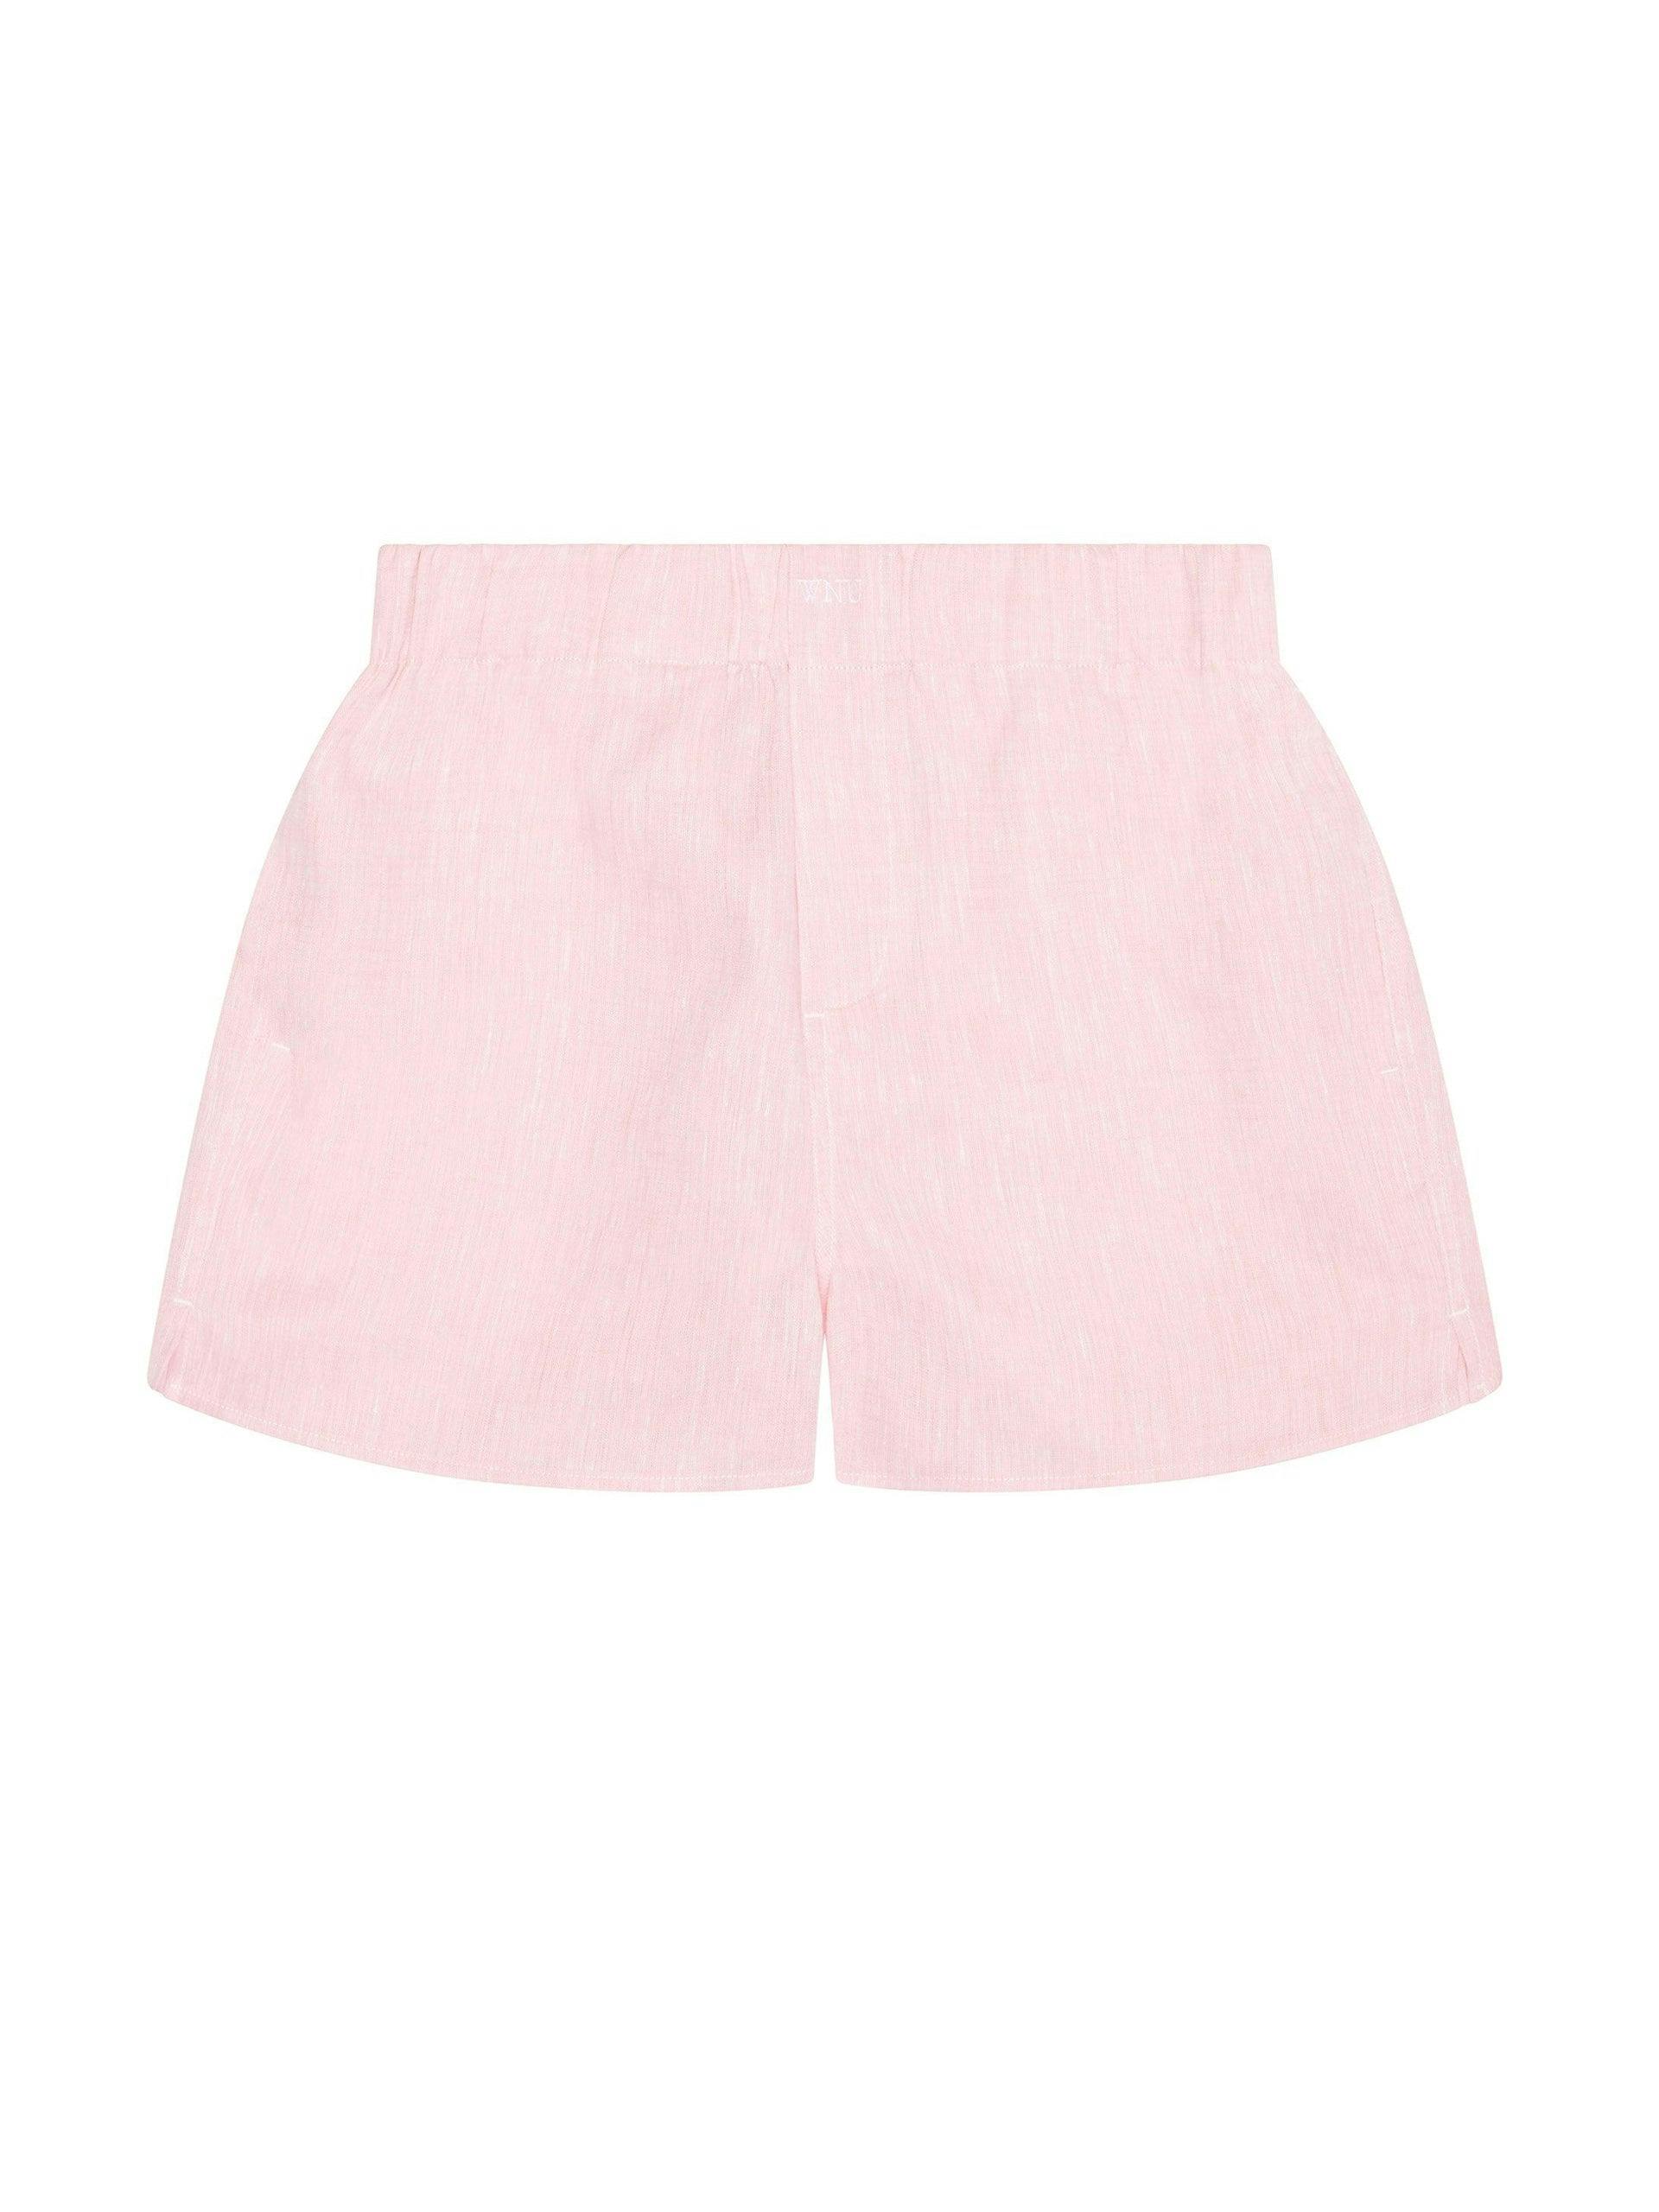 The Short: grapefruit pink linen